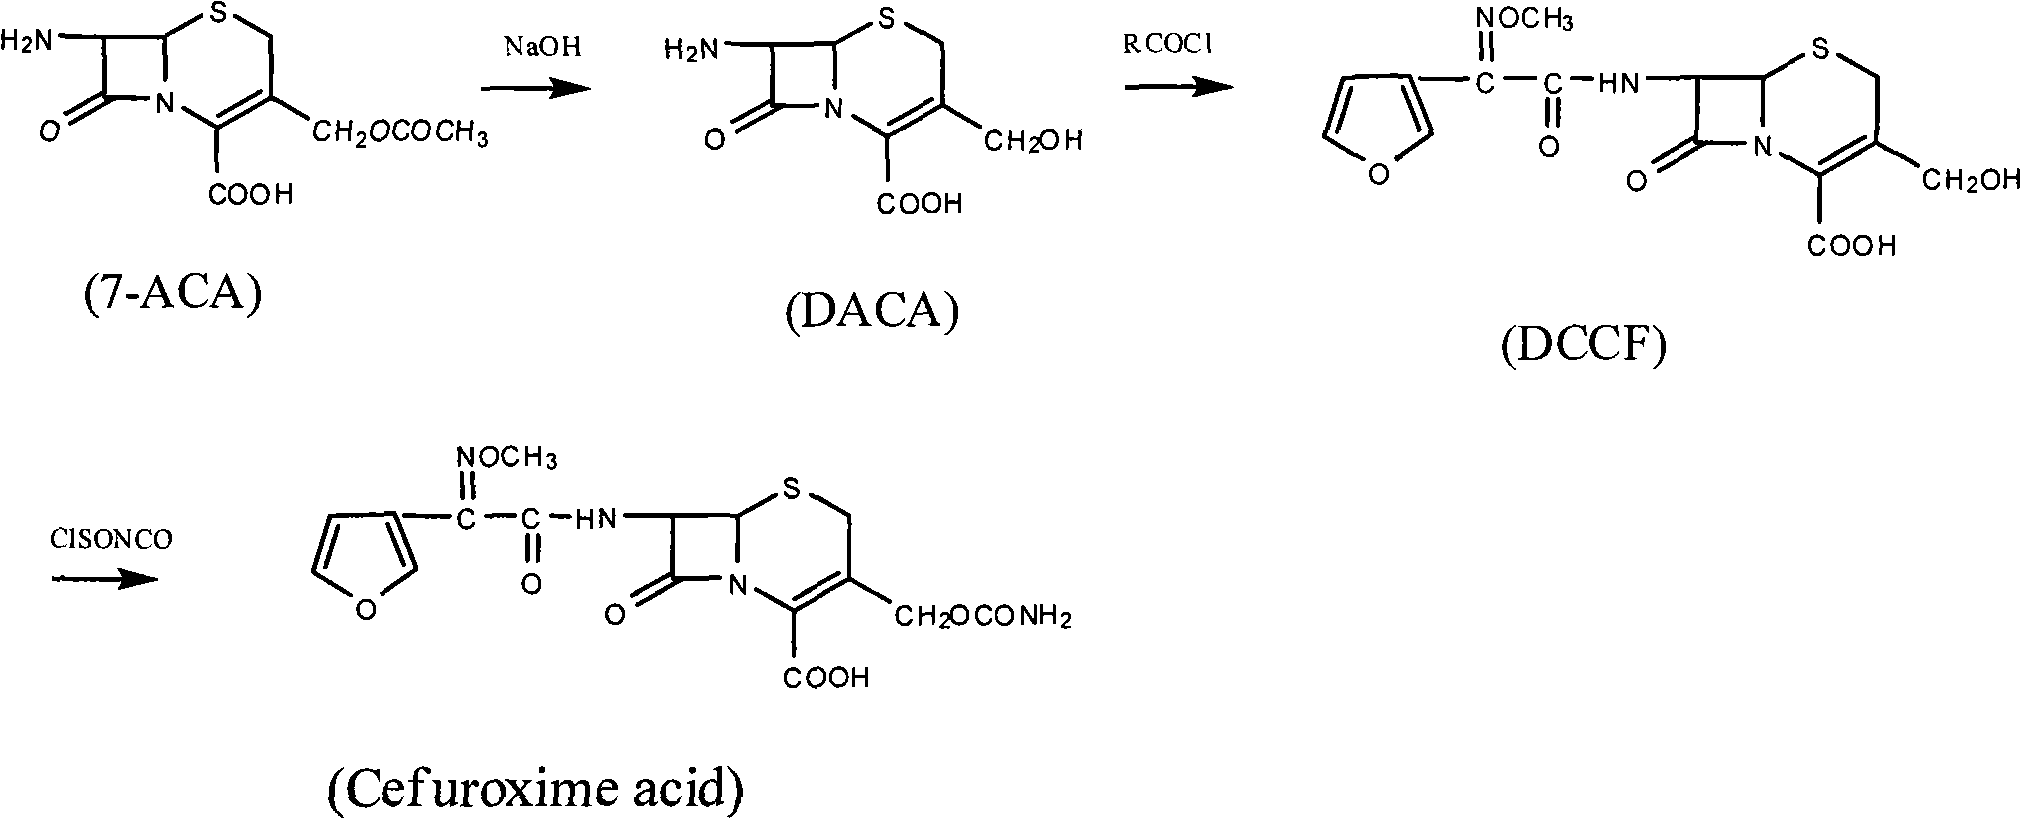 Method for synthesizing cefuroxime acid